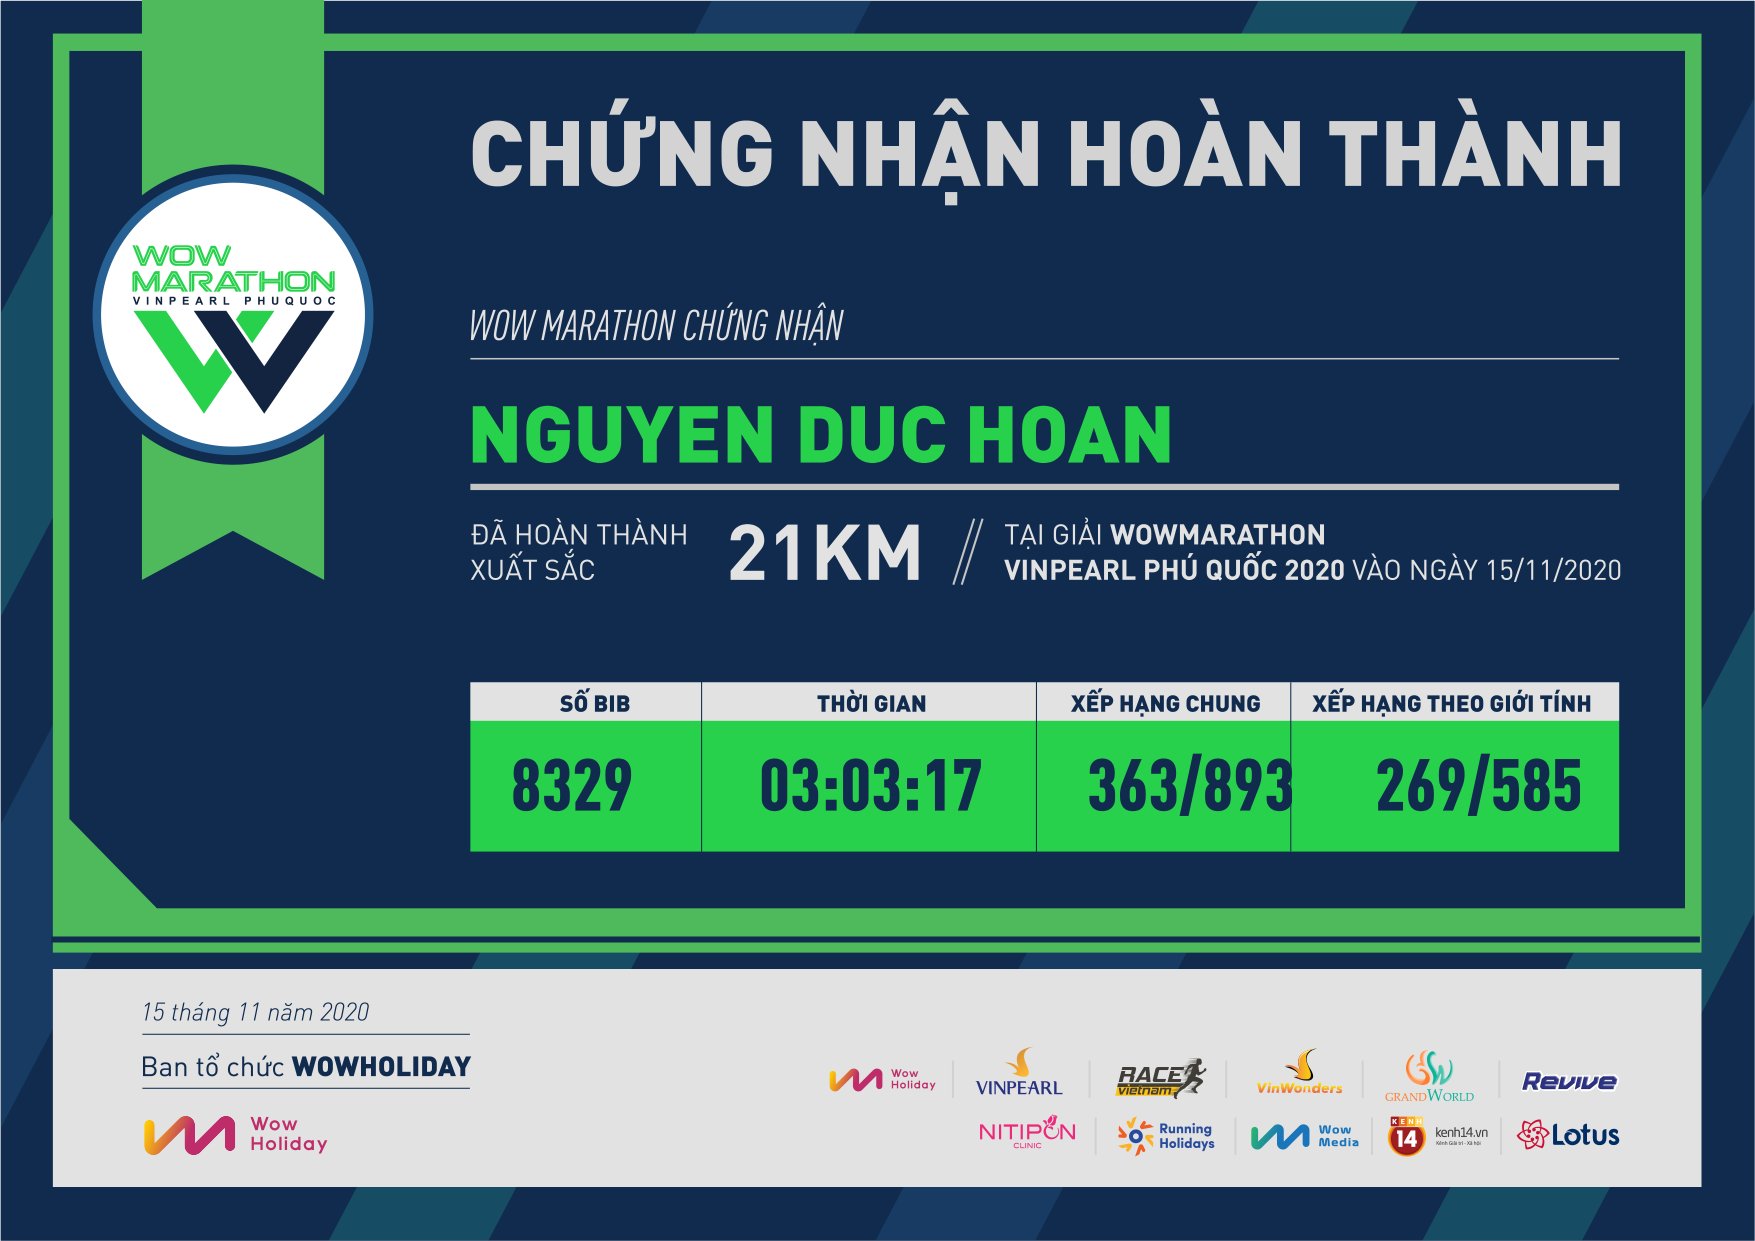 8329 - Nguyen Duc Hoan